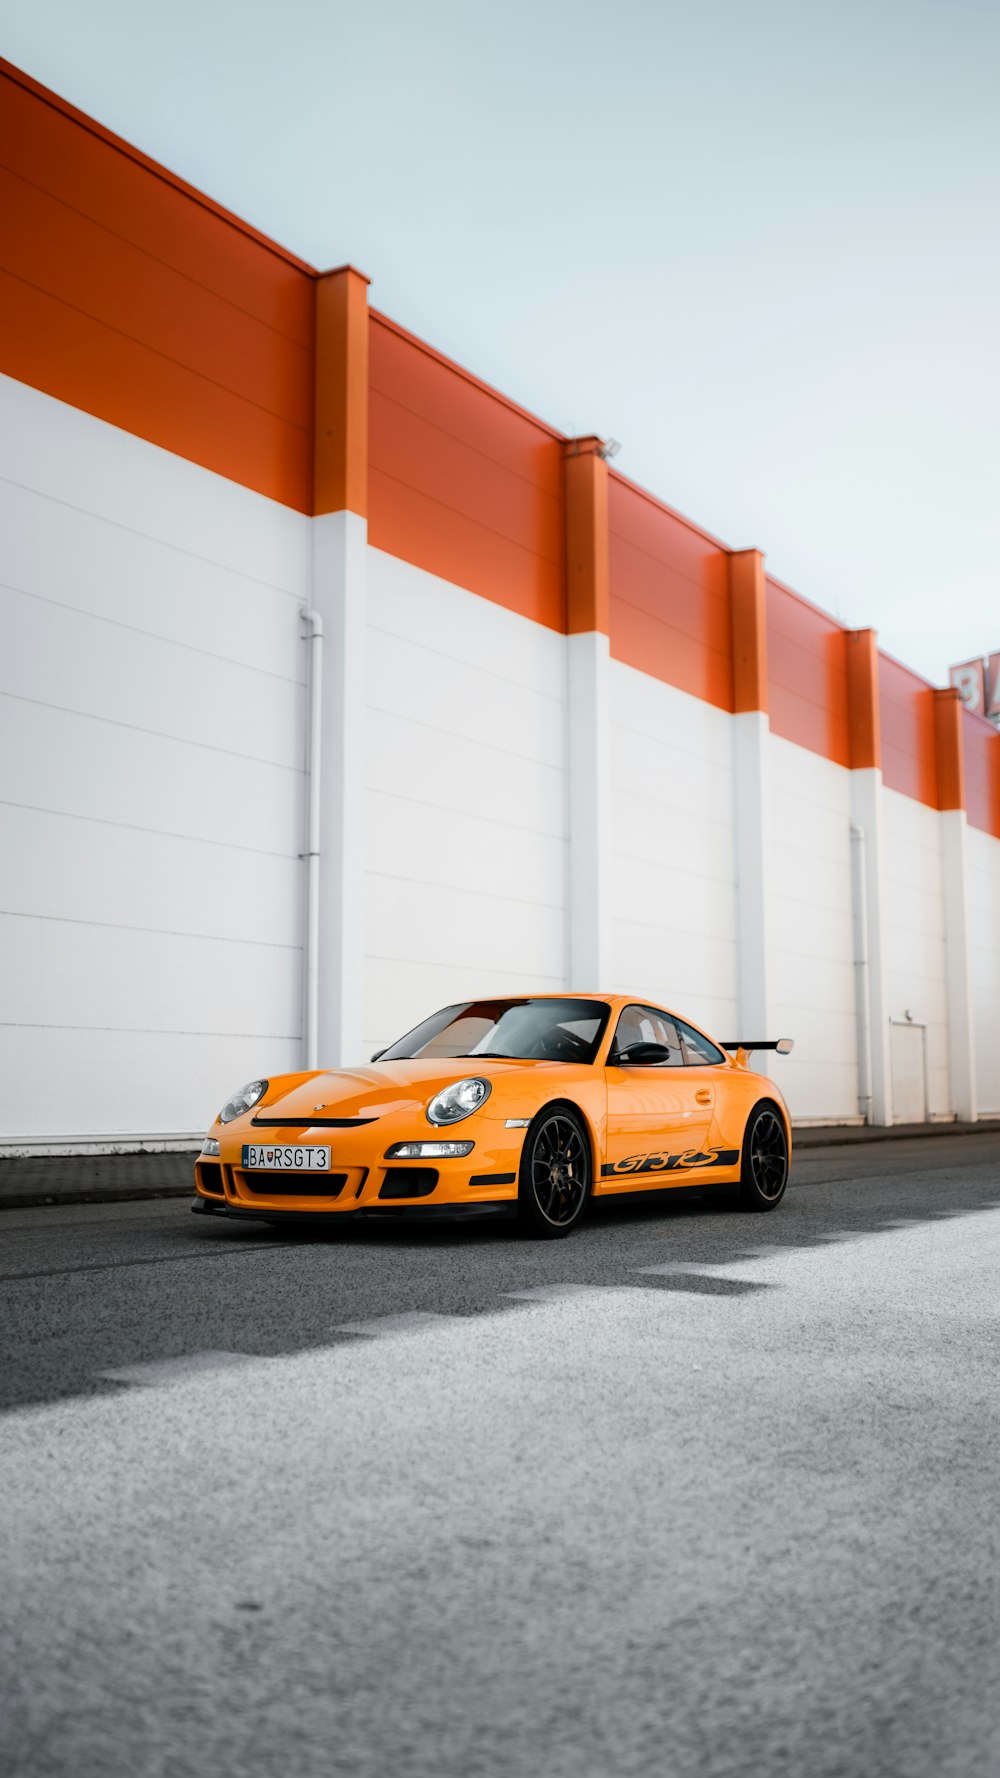 Orange-schwarzer Porsche 911 parkt neben weißer und roter Wand